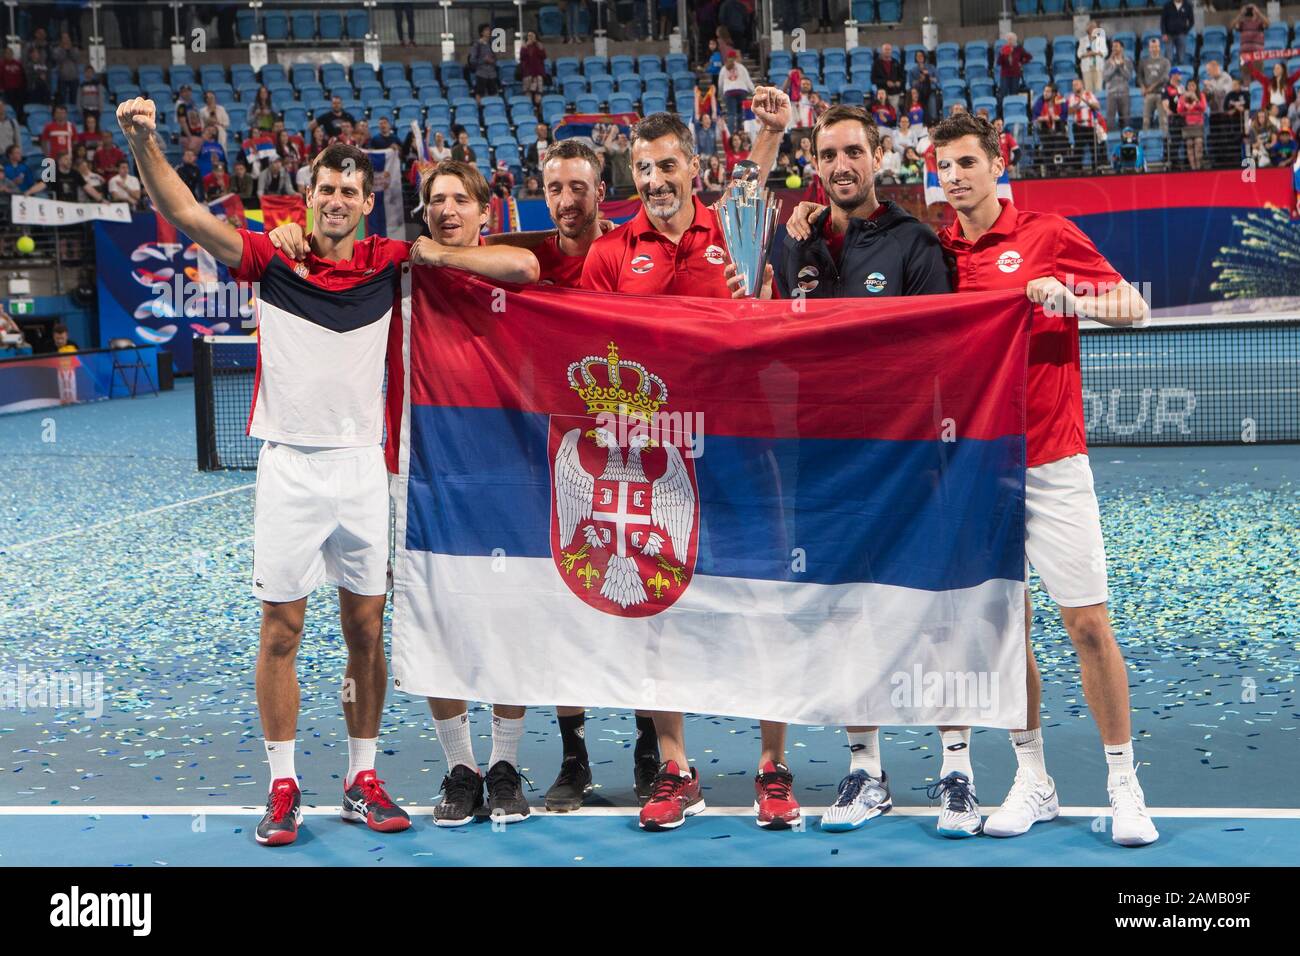 La Serbie remporte la coupe 2-1 contre l'Espagne lors de la finale de la coupe ATP 2020 à la Ken Rosewall Arena, Sydney, Australie, le 12 janvier 2020. Photo De Peter Dovgan. Banque D'Images